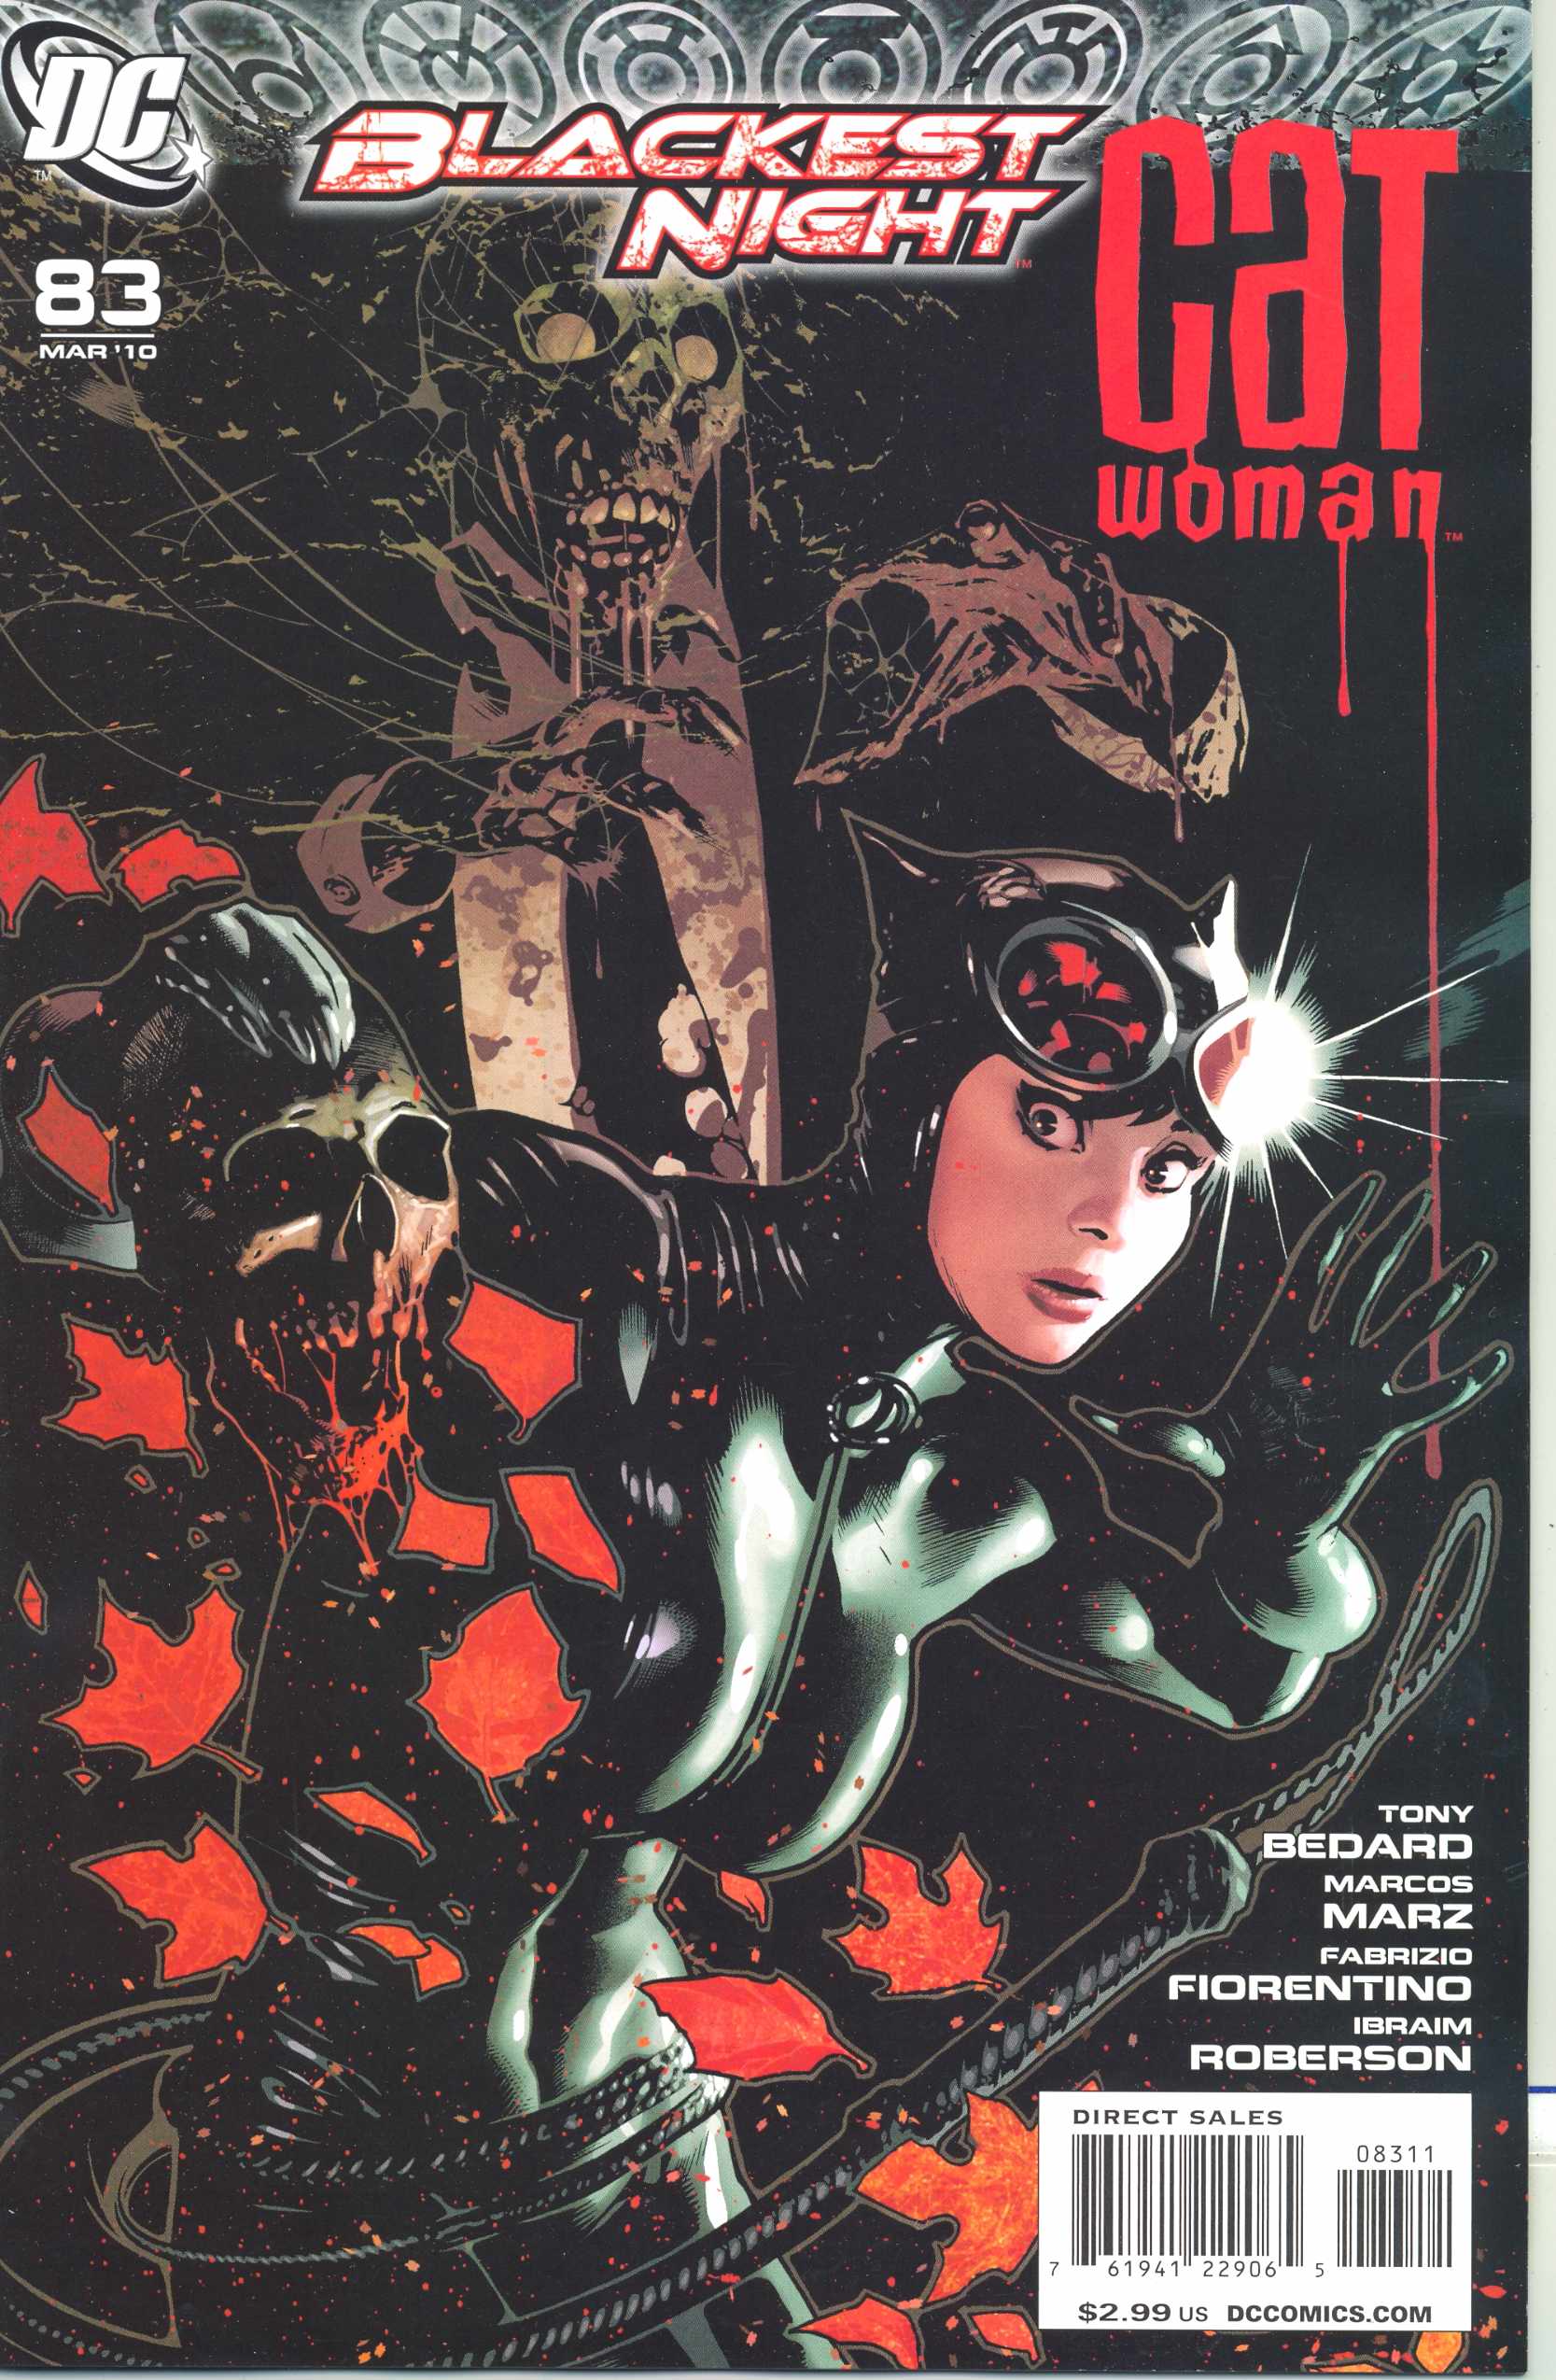 Catwoman #83 (2002) (Blackest Night)